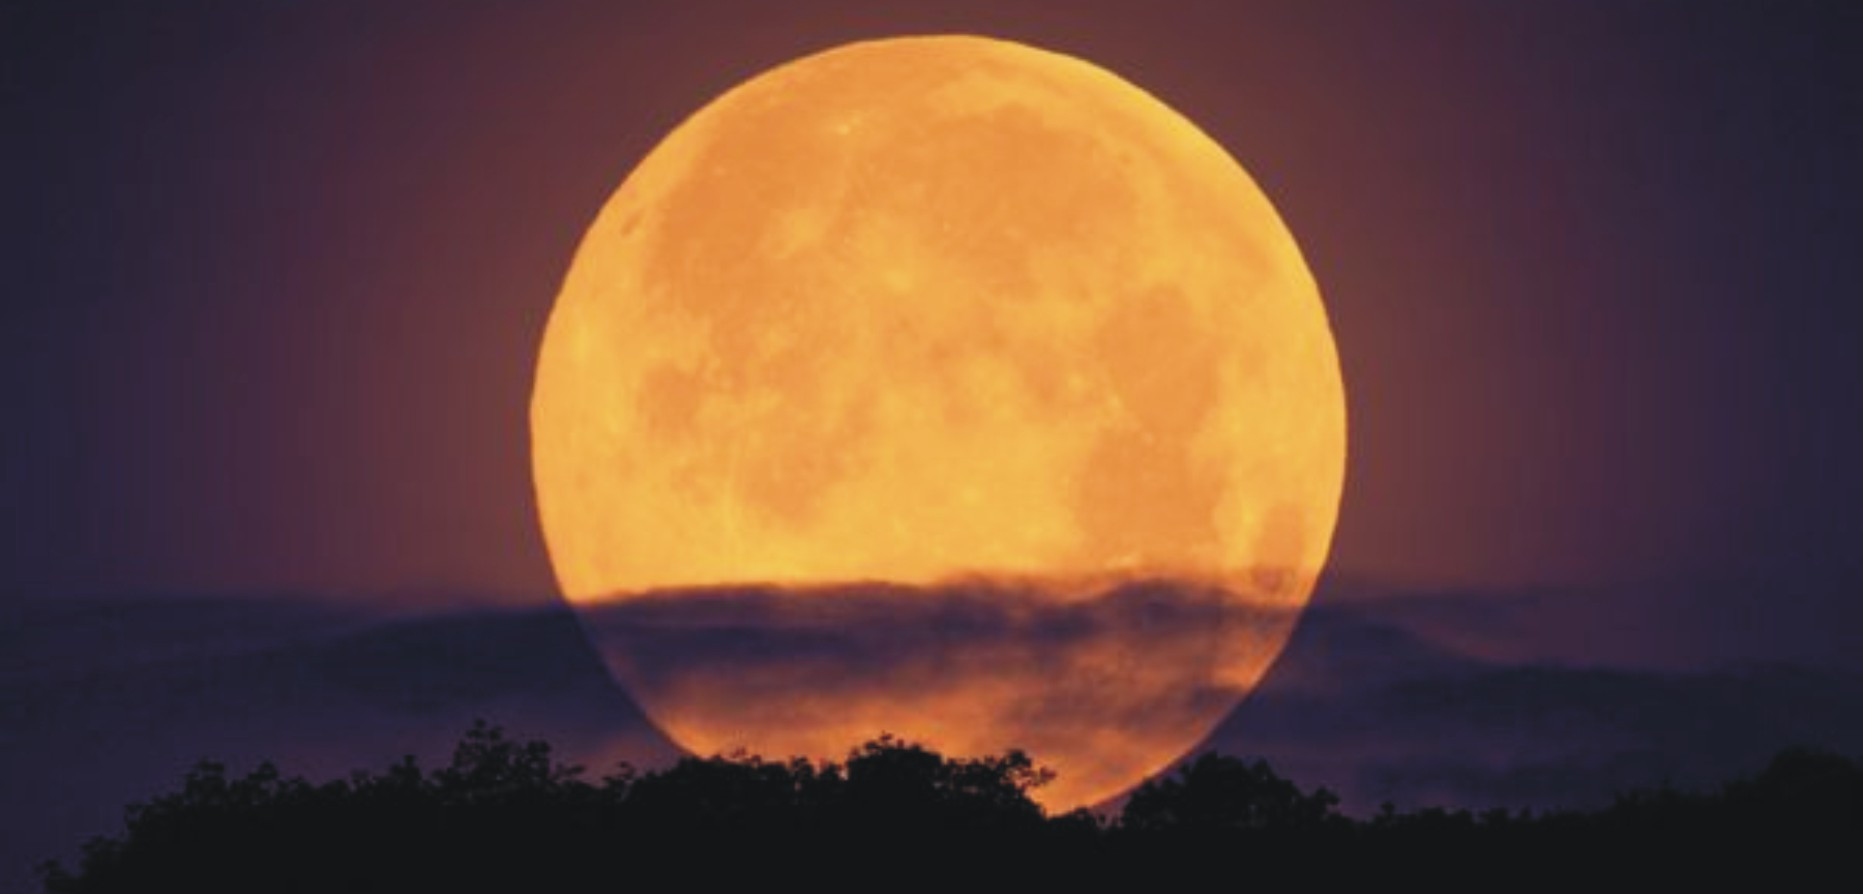 Esta noche llega la "Superluna", la más grande y espectacular desde